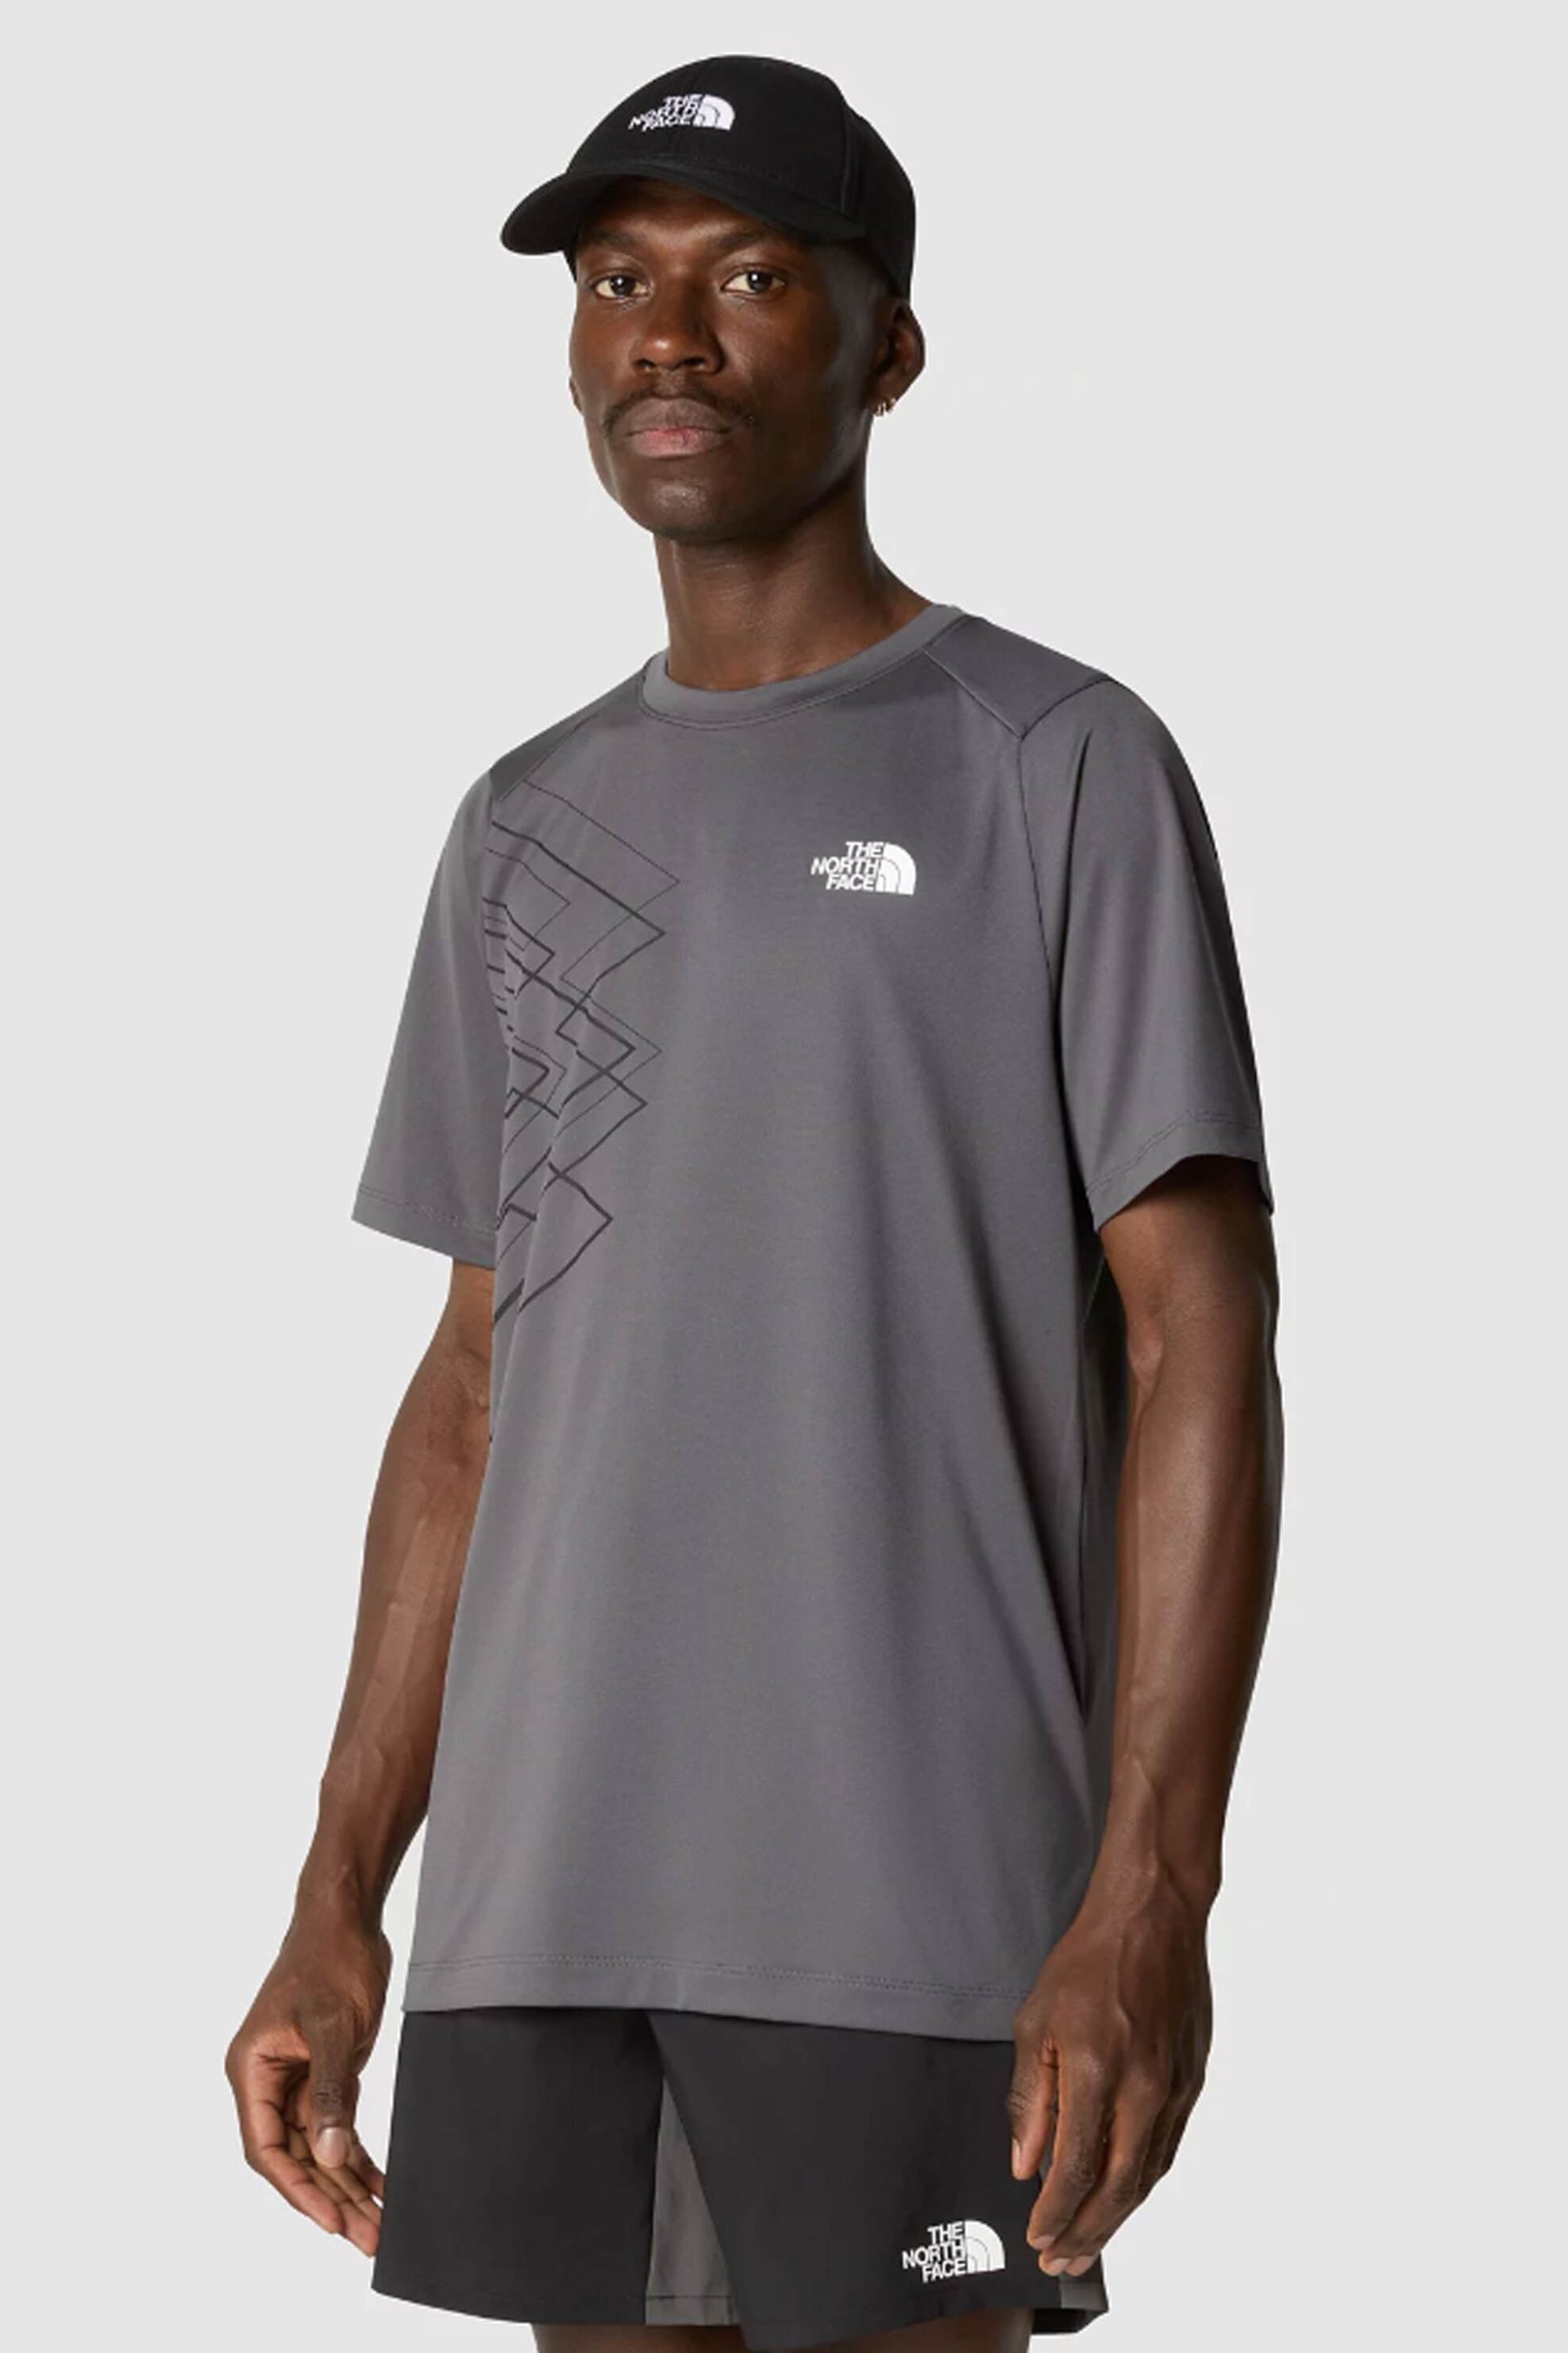 Ανδρική Μόδα > Ανδρικά Ρούχα > Ανδρικές Μπλούζες > Ανδρικά T-Shirts The North Face ανδρικό T-shirt μονόχρωμο με contrast λεπτομέρειες "Mountain Athletics" - NF0A87JKXI11 Ανθρακί